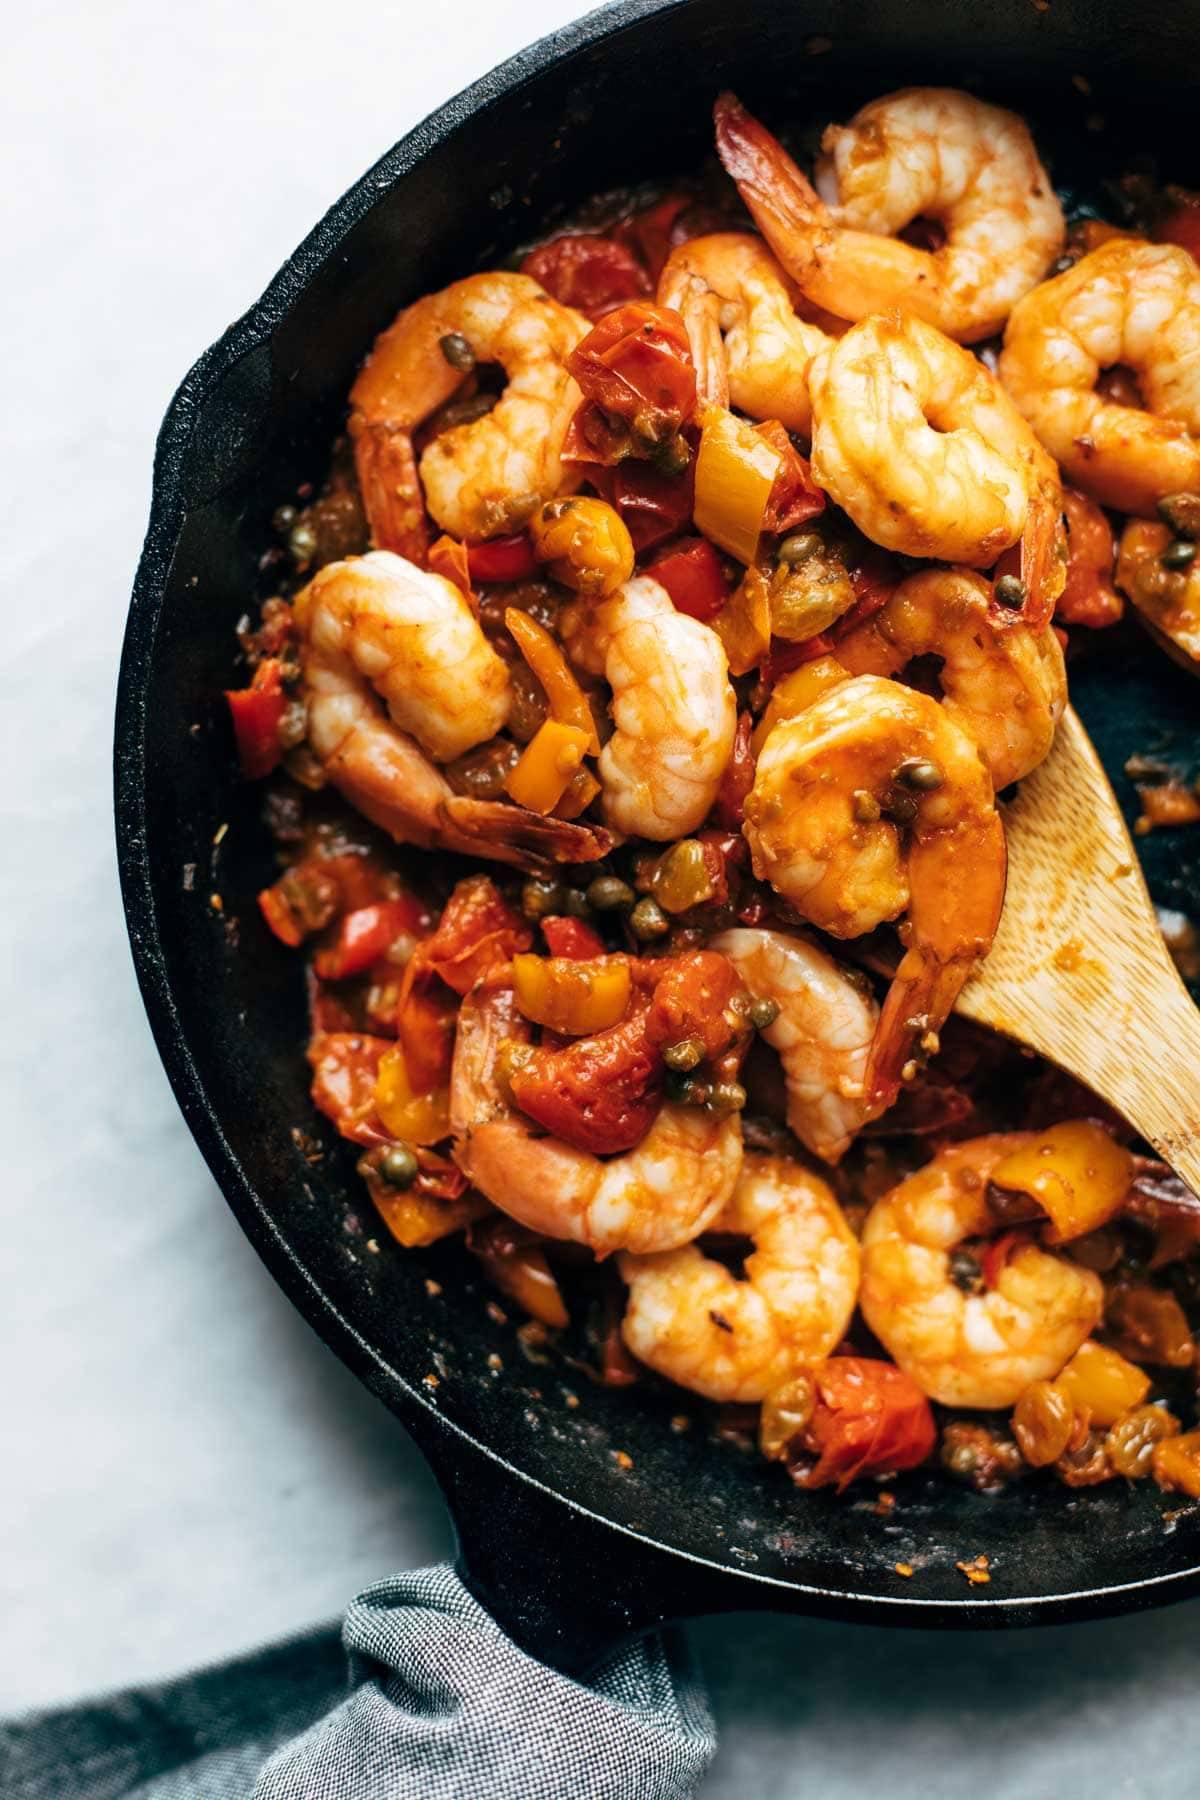 Spicy shrimp veracruz in a pan.